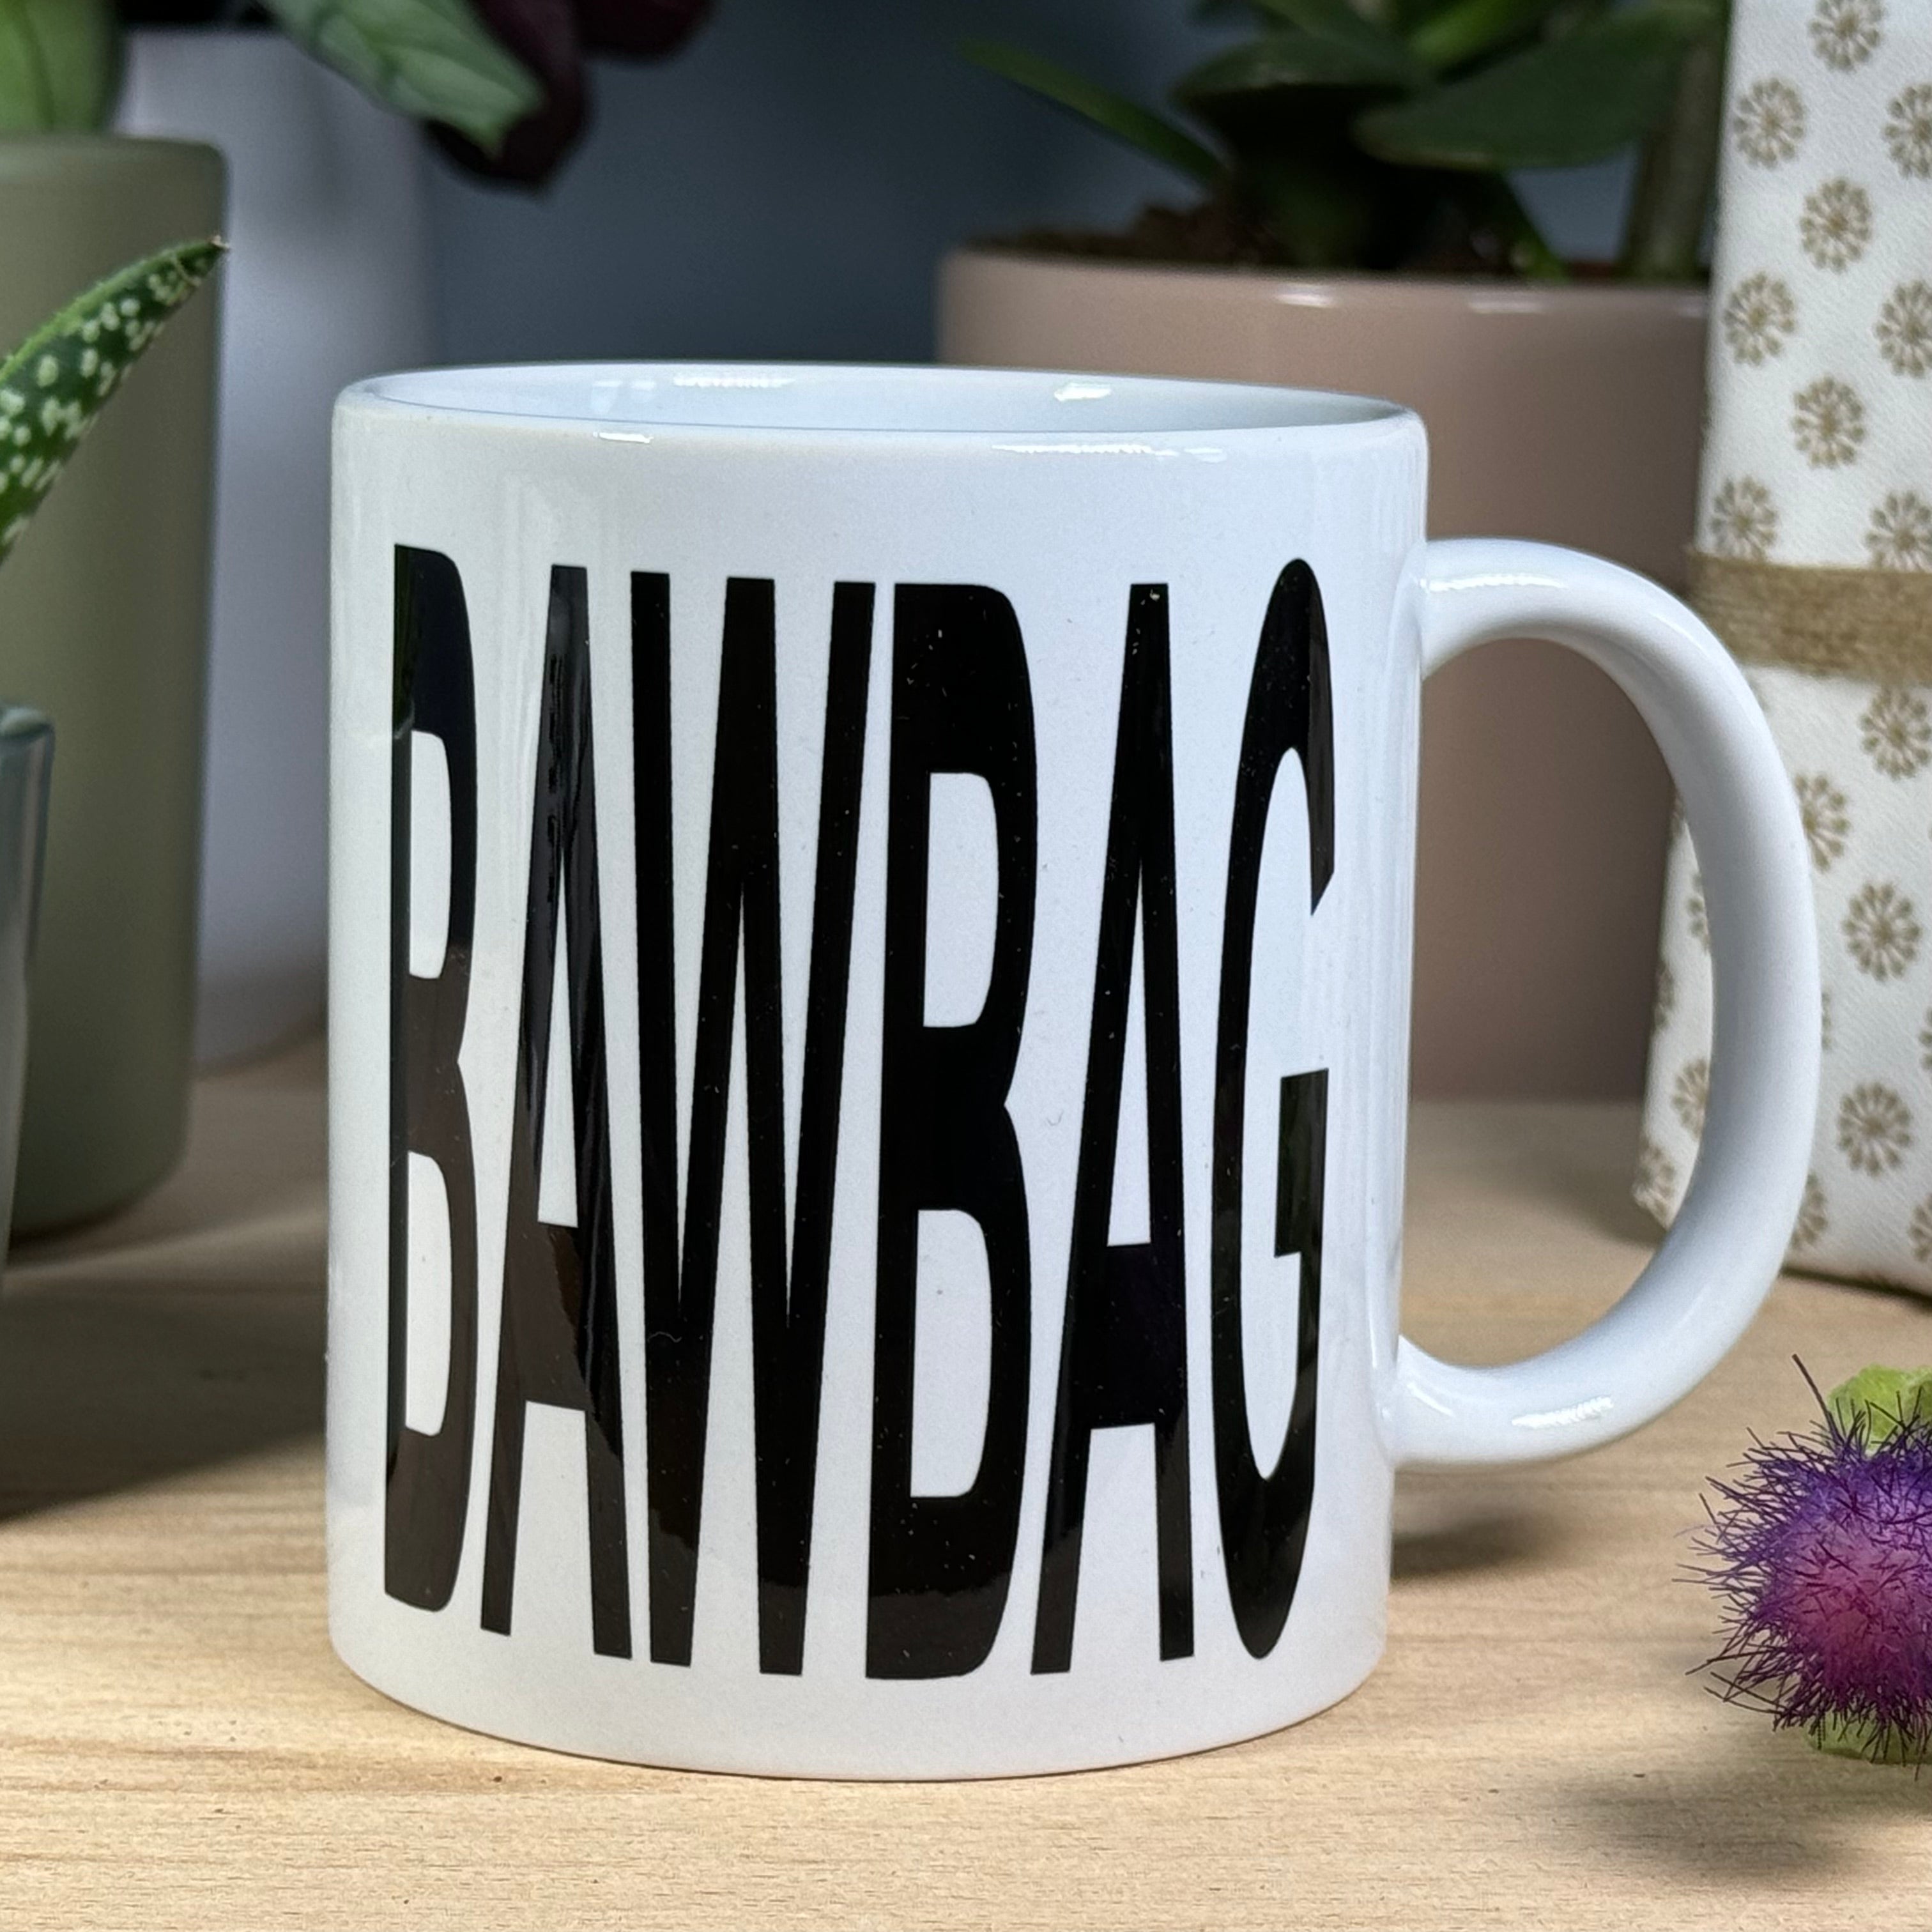 Ceramic mug - Scottish dialect - bawbag